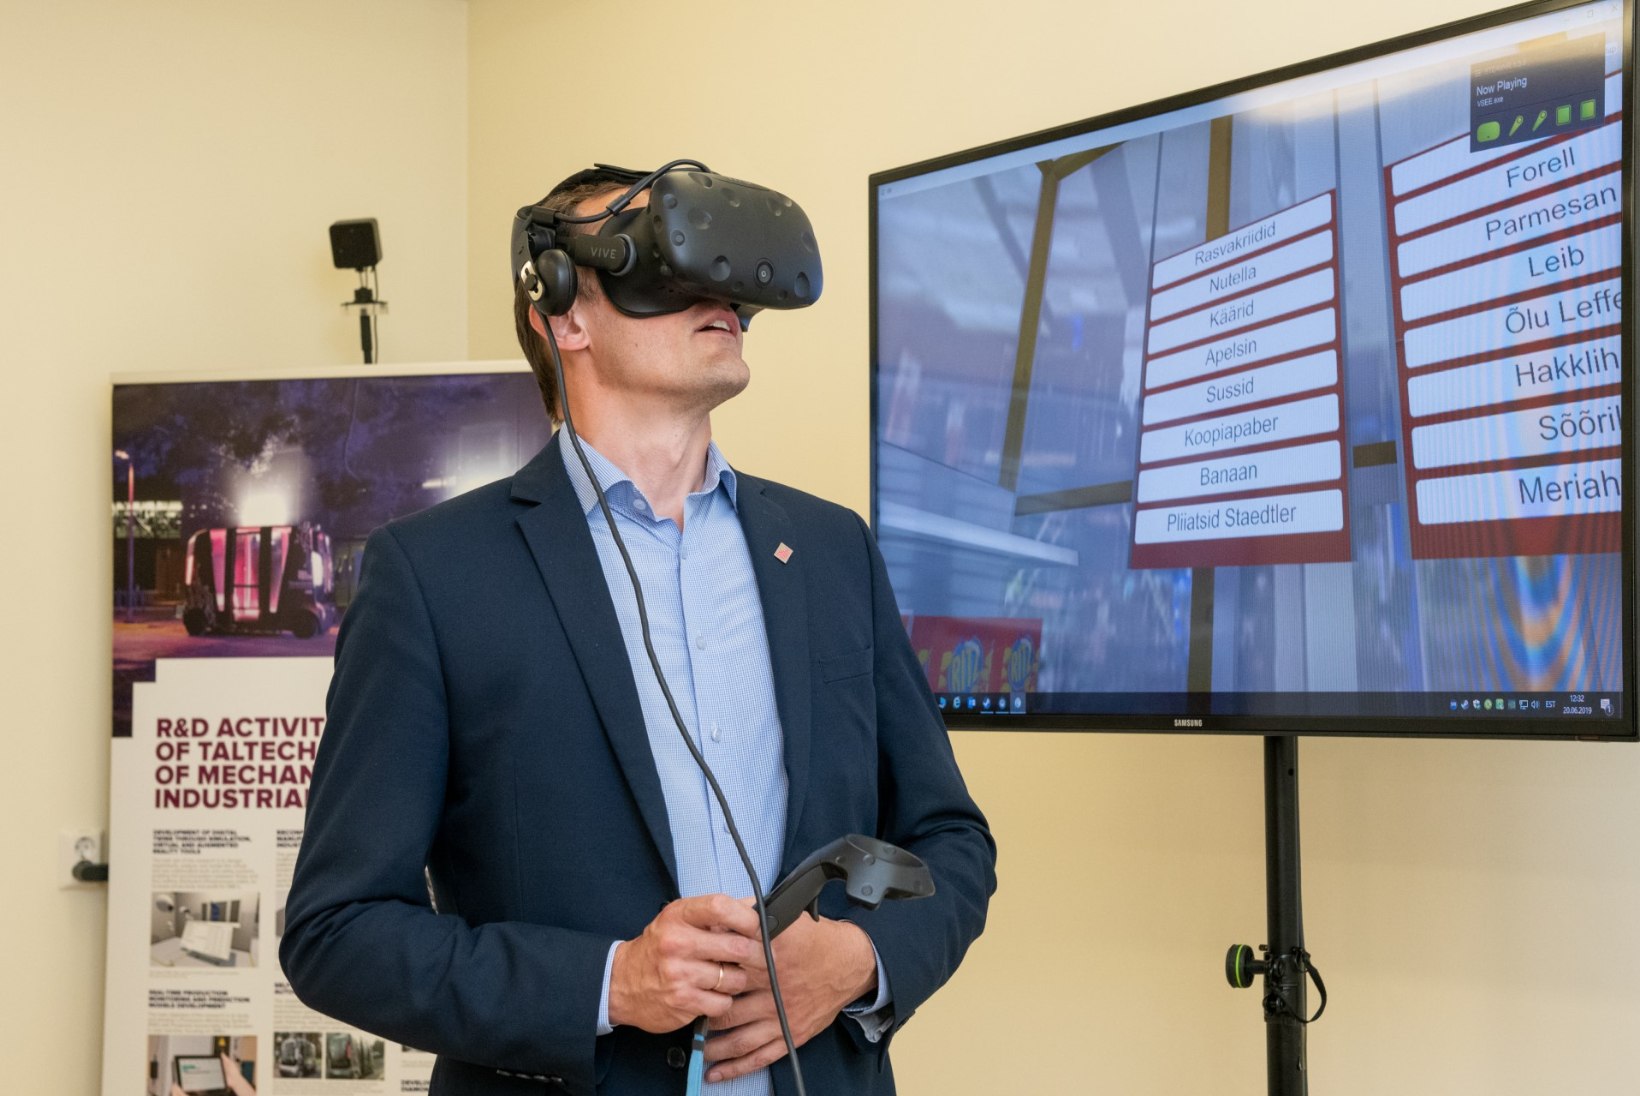 GALERII  | Ida-Tallinna Keskhaigla hakkab taastusravis kasutama virtuaalreaalsust   